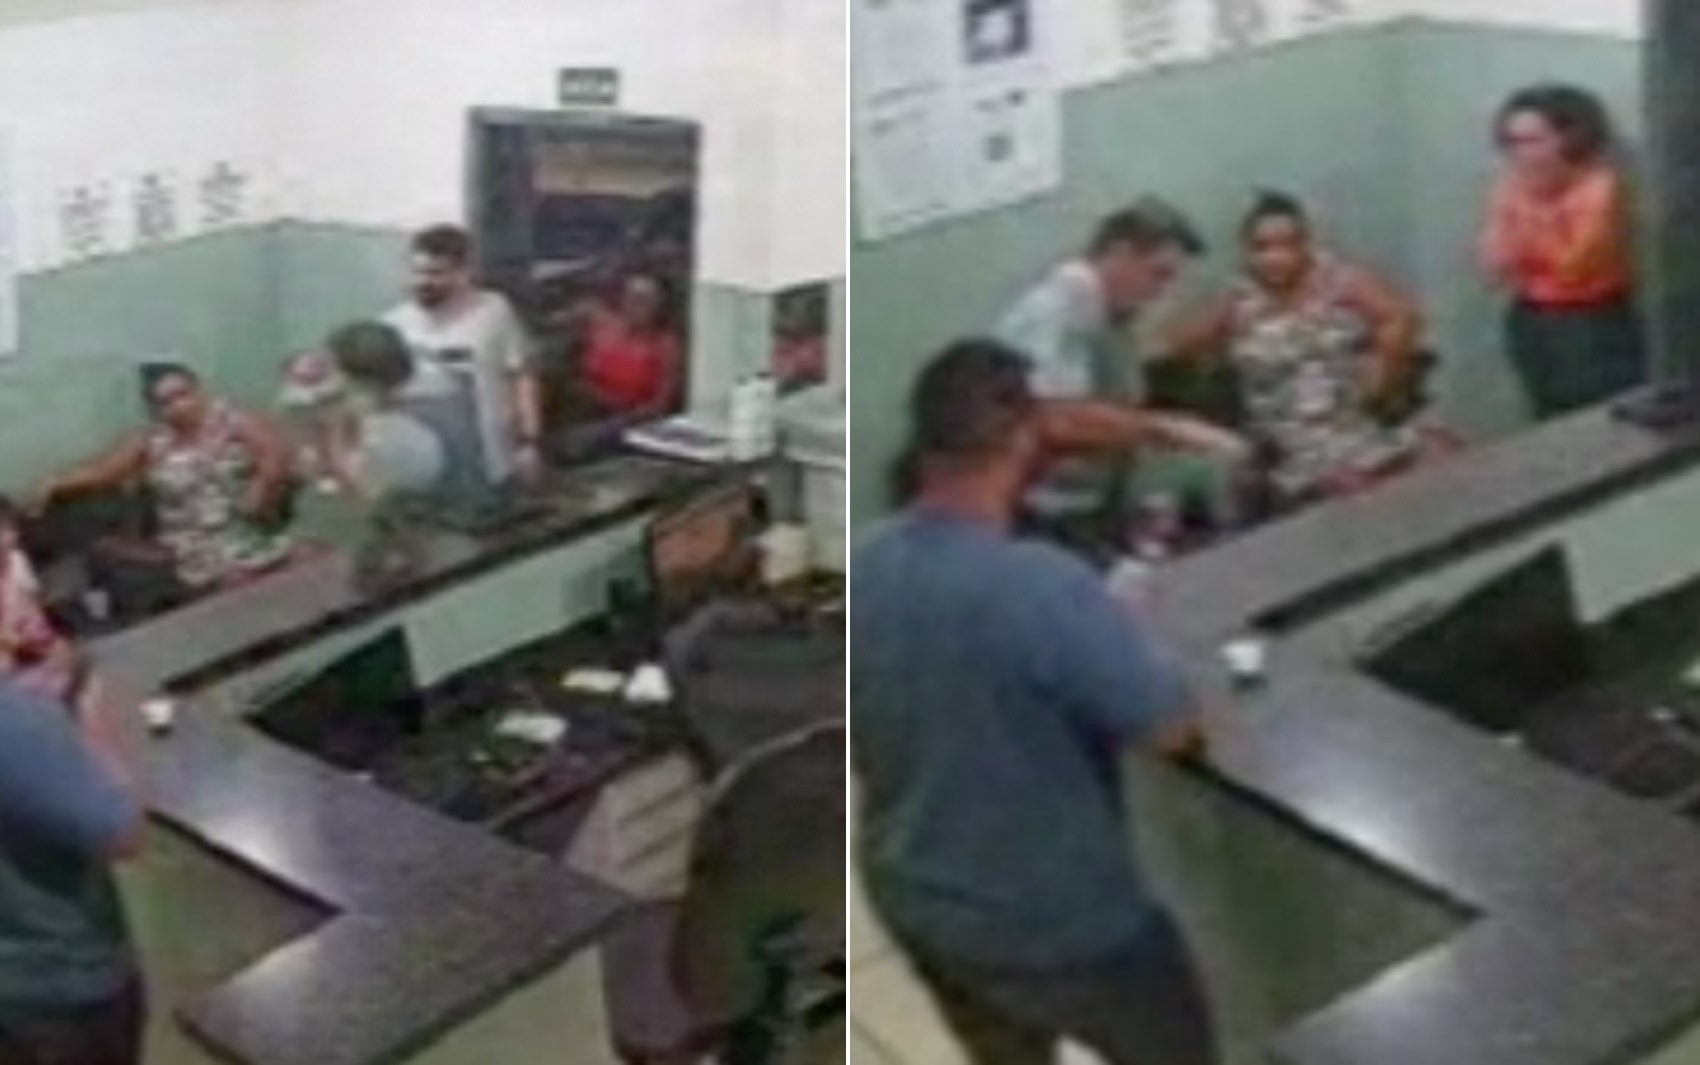 Vídeo mostra policial salvando bebê de cinco dias engasgado com leite materno em Ribeirão Preto, SPon março 25, 2023 at 2:46 pm